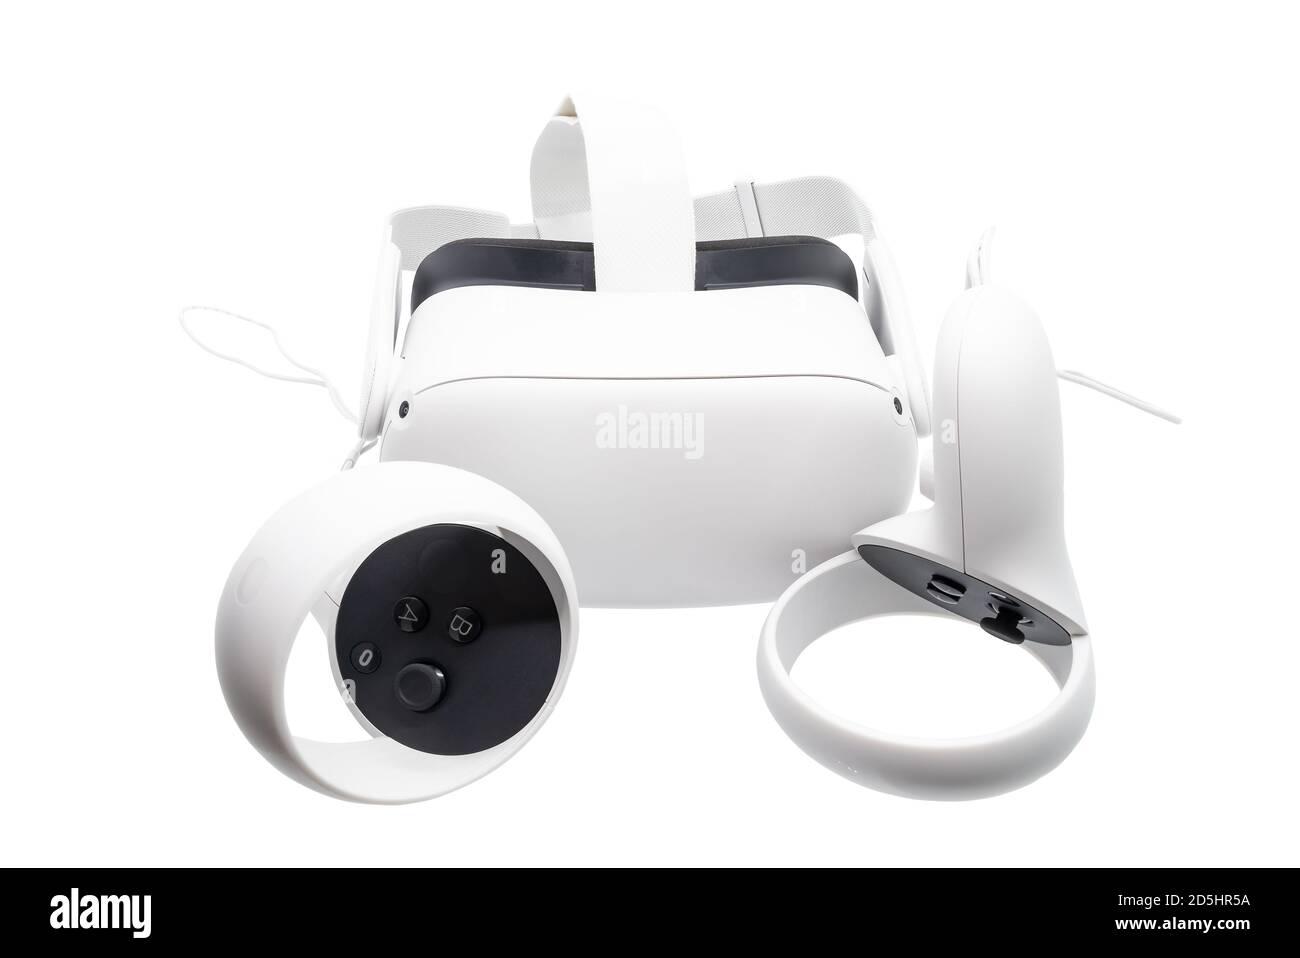 Huelva, Spagna - 13 ottobre 2020: Oculus quest 2, la nuova generazione di realtà virtuale all-in-one. Con un fattore di forma all-in-one riprogettato, il nuovo comando Touch Foto Stock